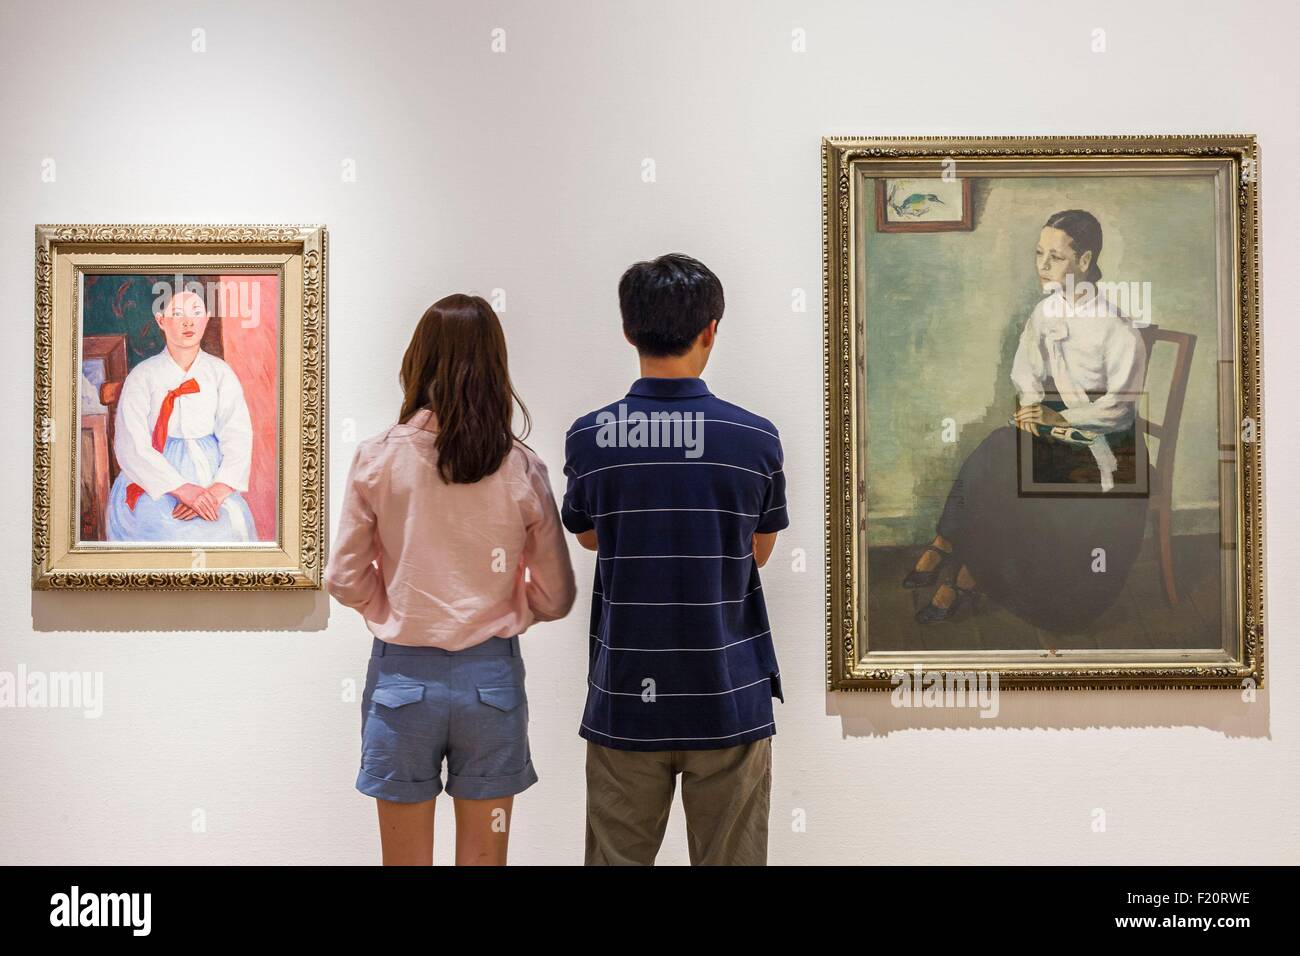 La Corée du Sud, Séoul, Musée National, Deoksugung d'Art Moderne et Contemporain, 1936 peintures d'artistes coréen Lim Gun-hong et Oh Ji-ho Banque D'Images